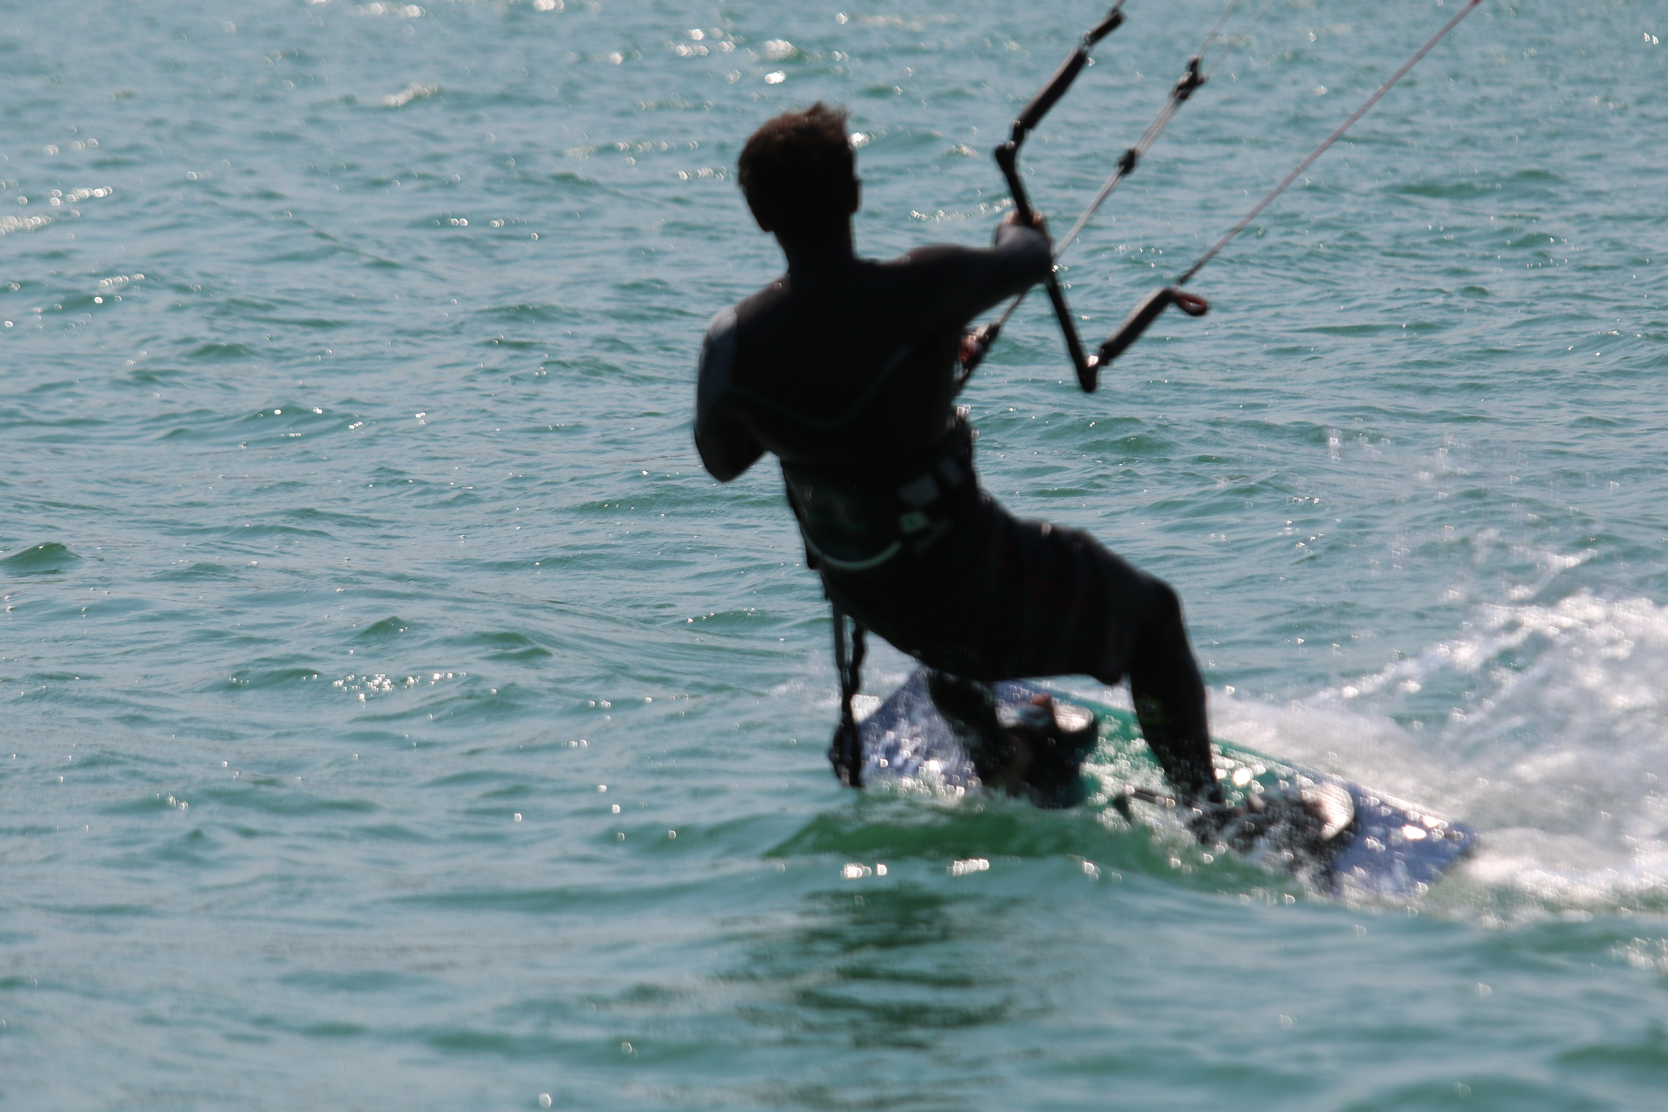 Lezione Avanzata Freestyle Wakestyle Kitesurf Lago di Como XTREMELEMENT Kite School